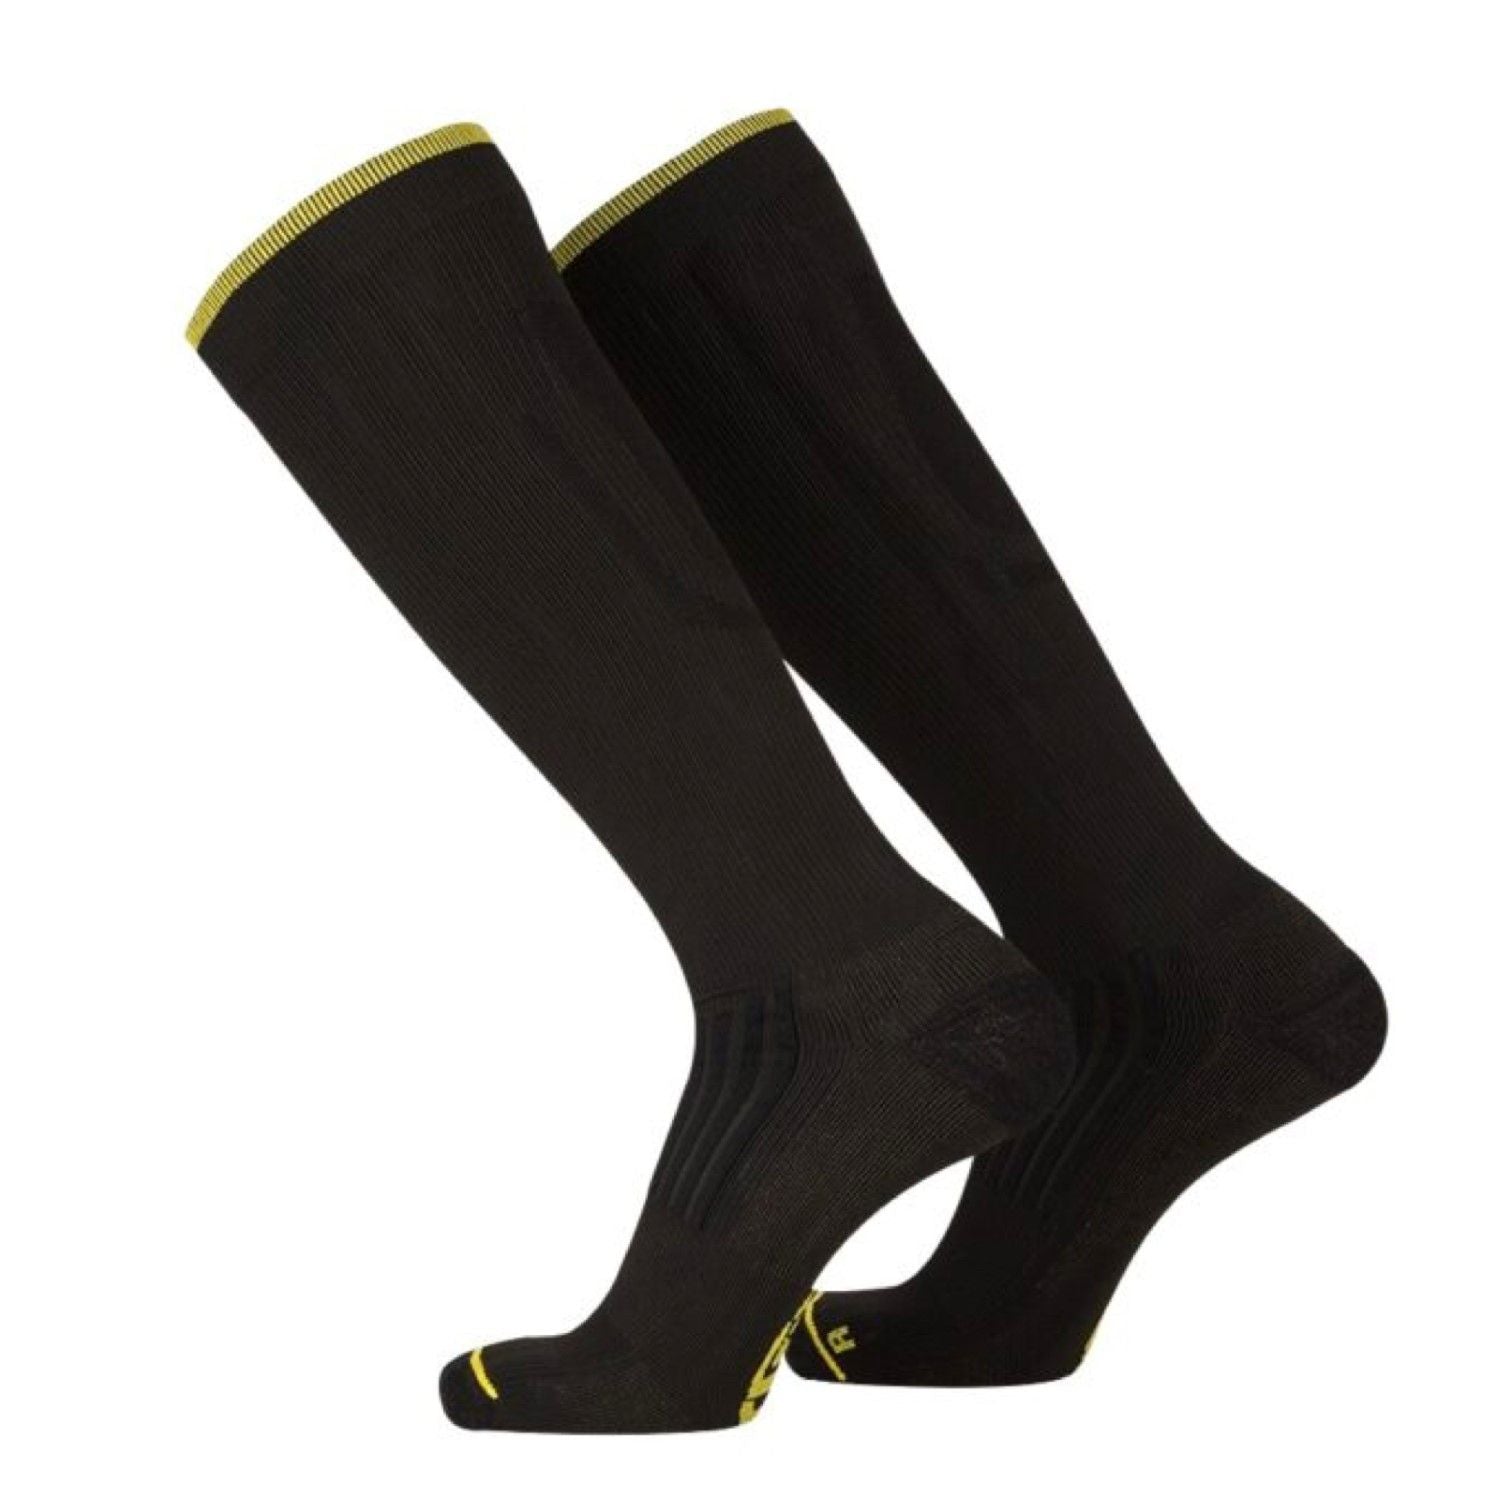 SKINS Unisex Series-3 Travel Socks - Black – SKINS Compression NZ